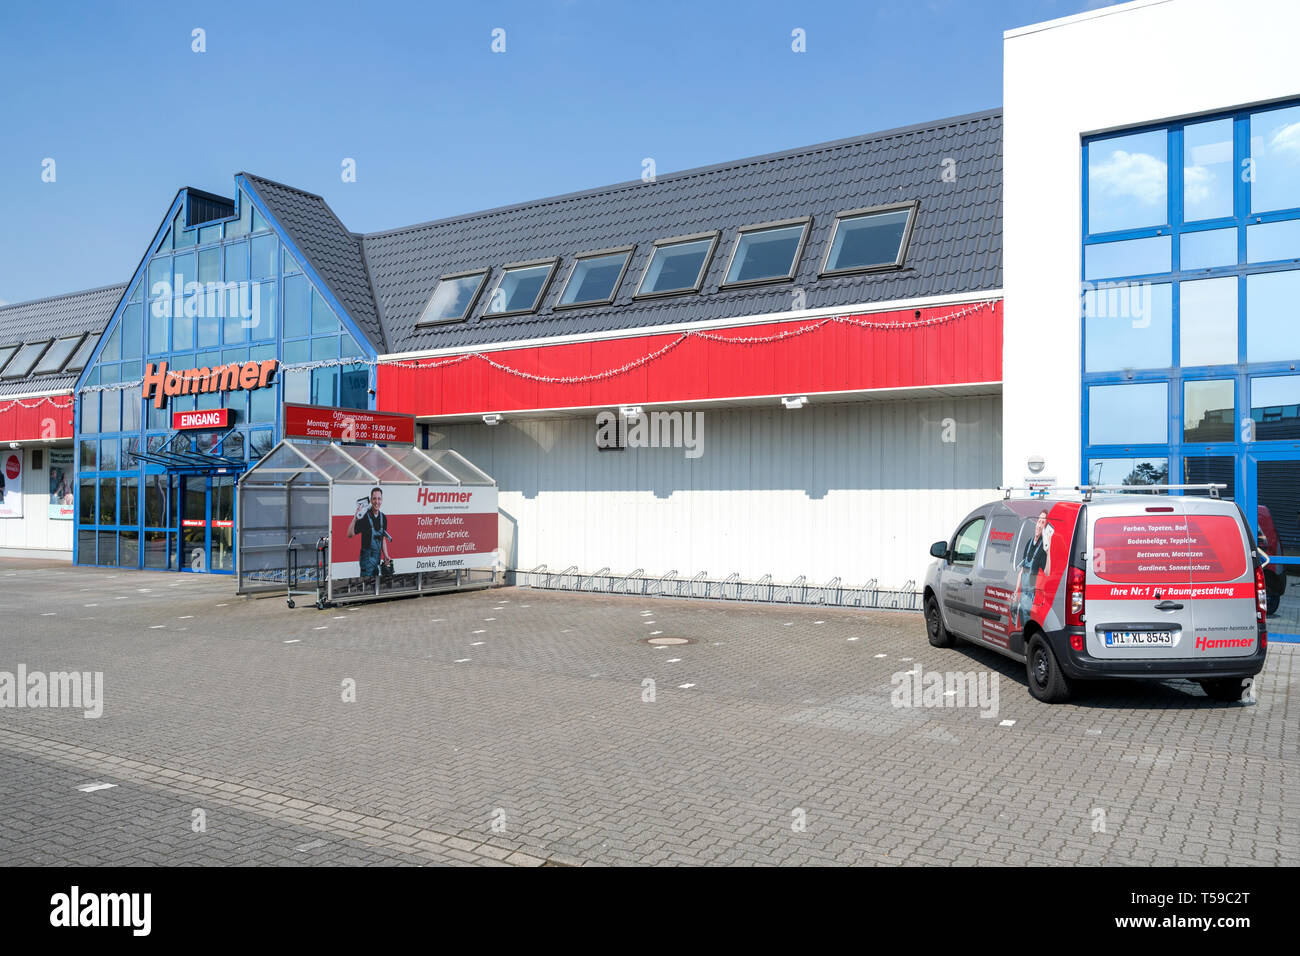 Hammer store à Delmenhorst, Allemagne. Hammer est une chaîne de détaillants allemands qui offre des produits et services autour du thème de l'aménagement intérieur. Banque D'Images